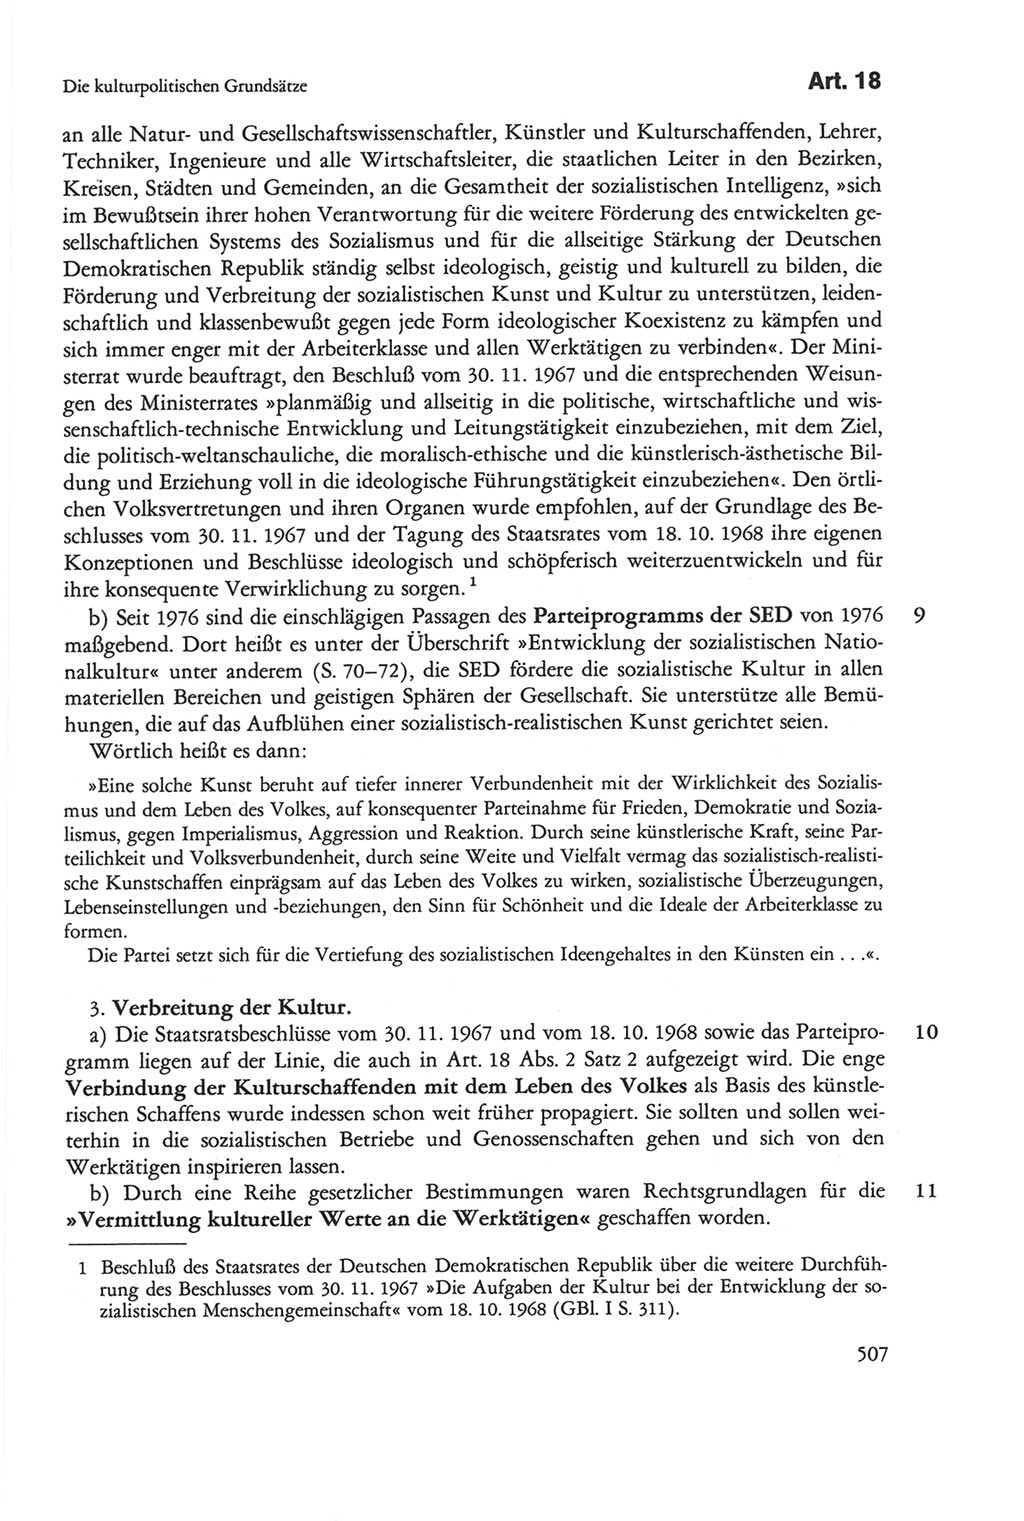 Die sozialistische Verfassung der Deutschen Demokratischen Republik (DDR), Kommentar 1982, Seite 507 (Soz. Verf. DDR Komm. 1982, S. 507)